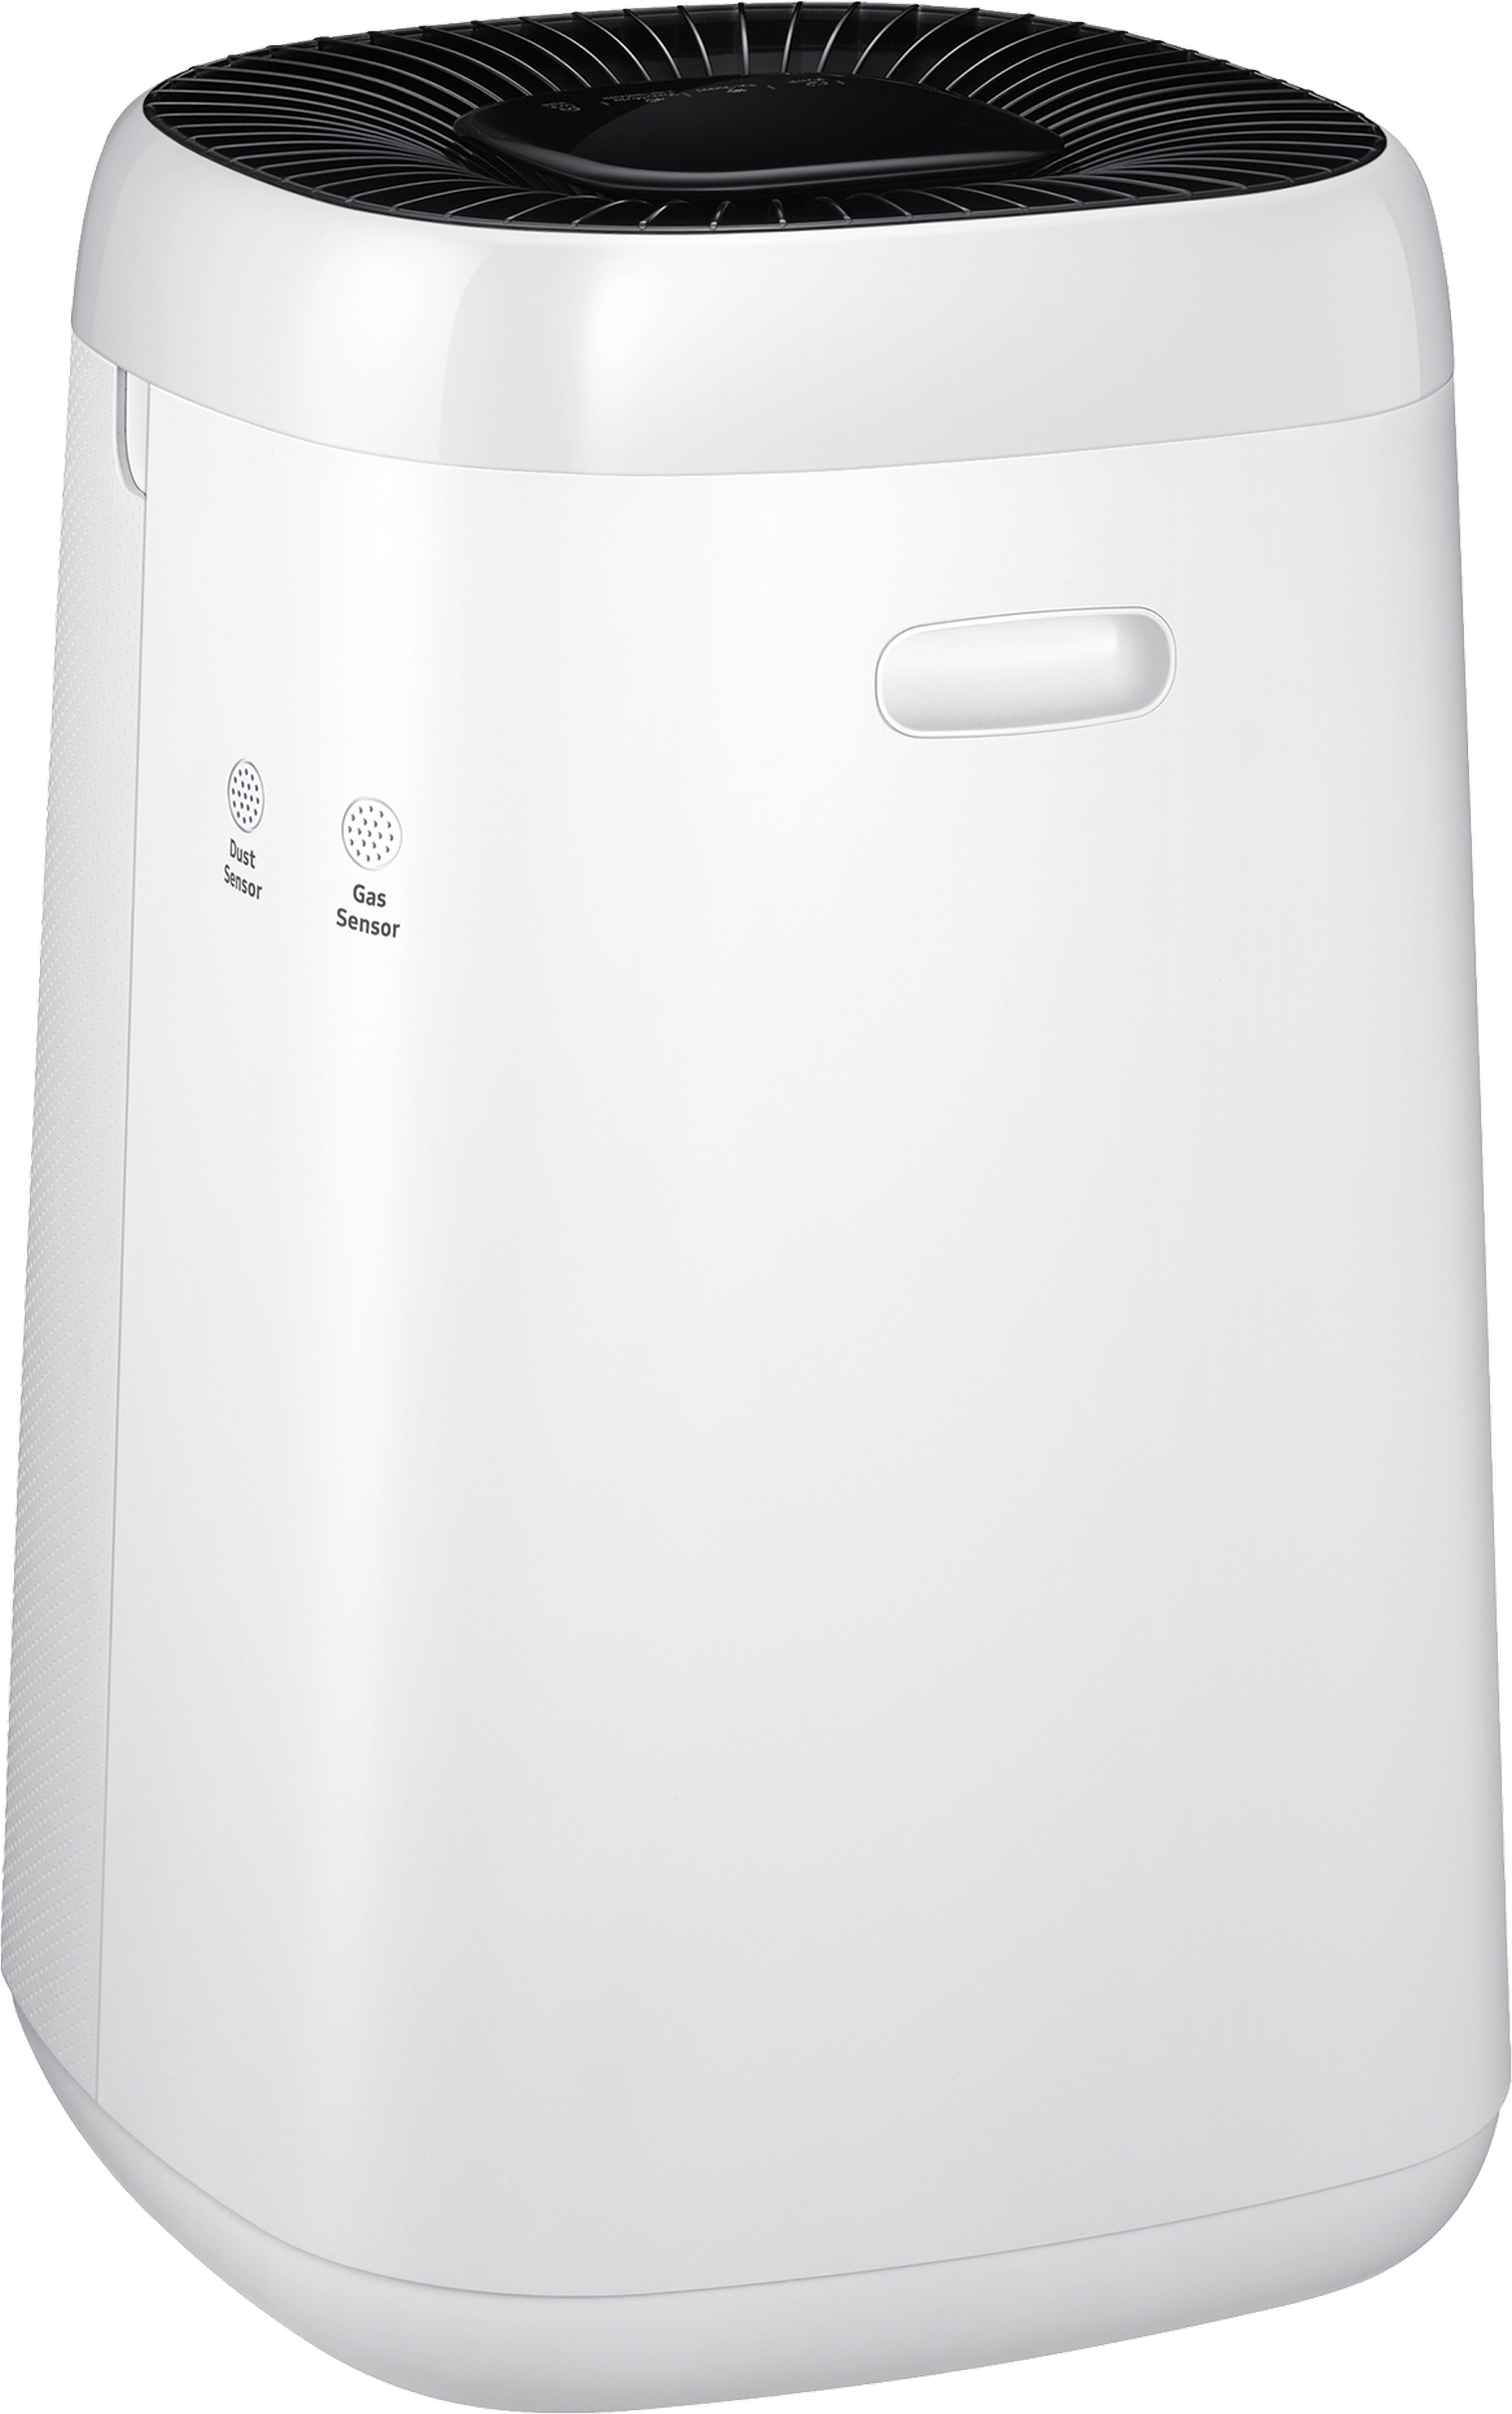 Очищувач повітря Samsung AX34T3020WW/ER огляд - фото 8